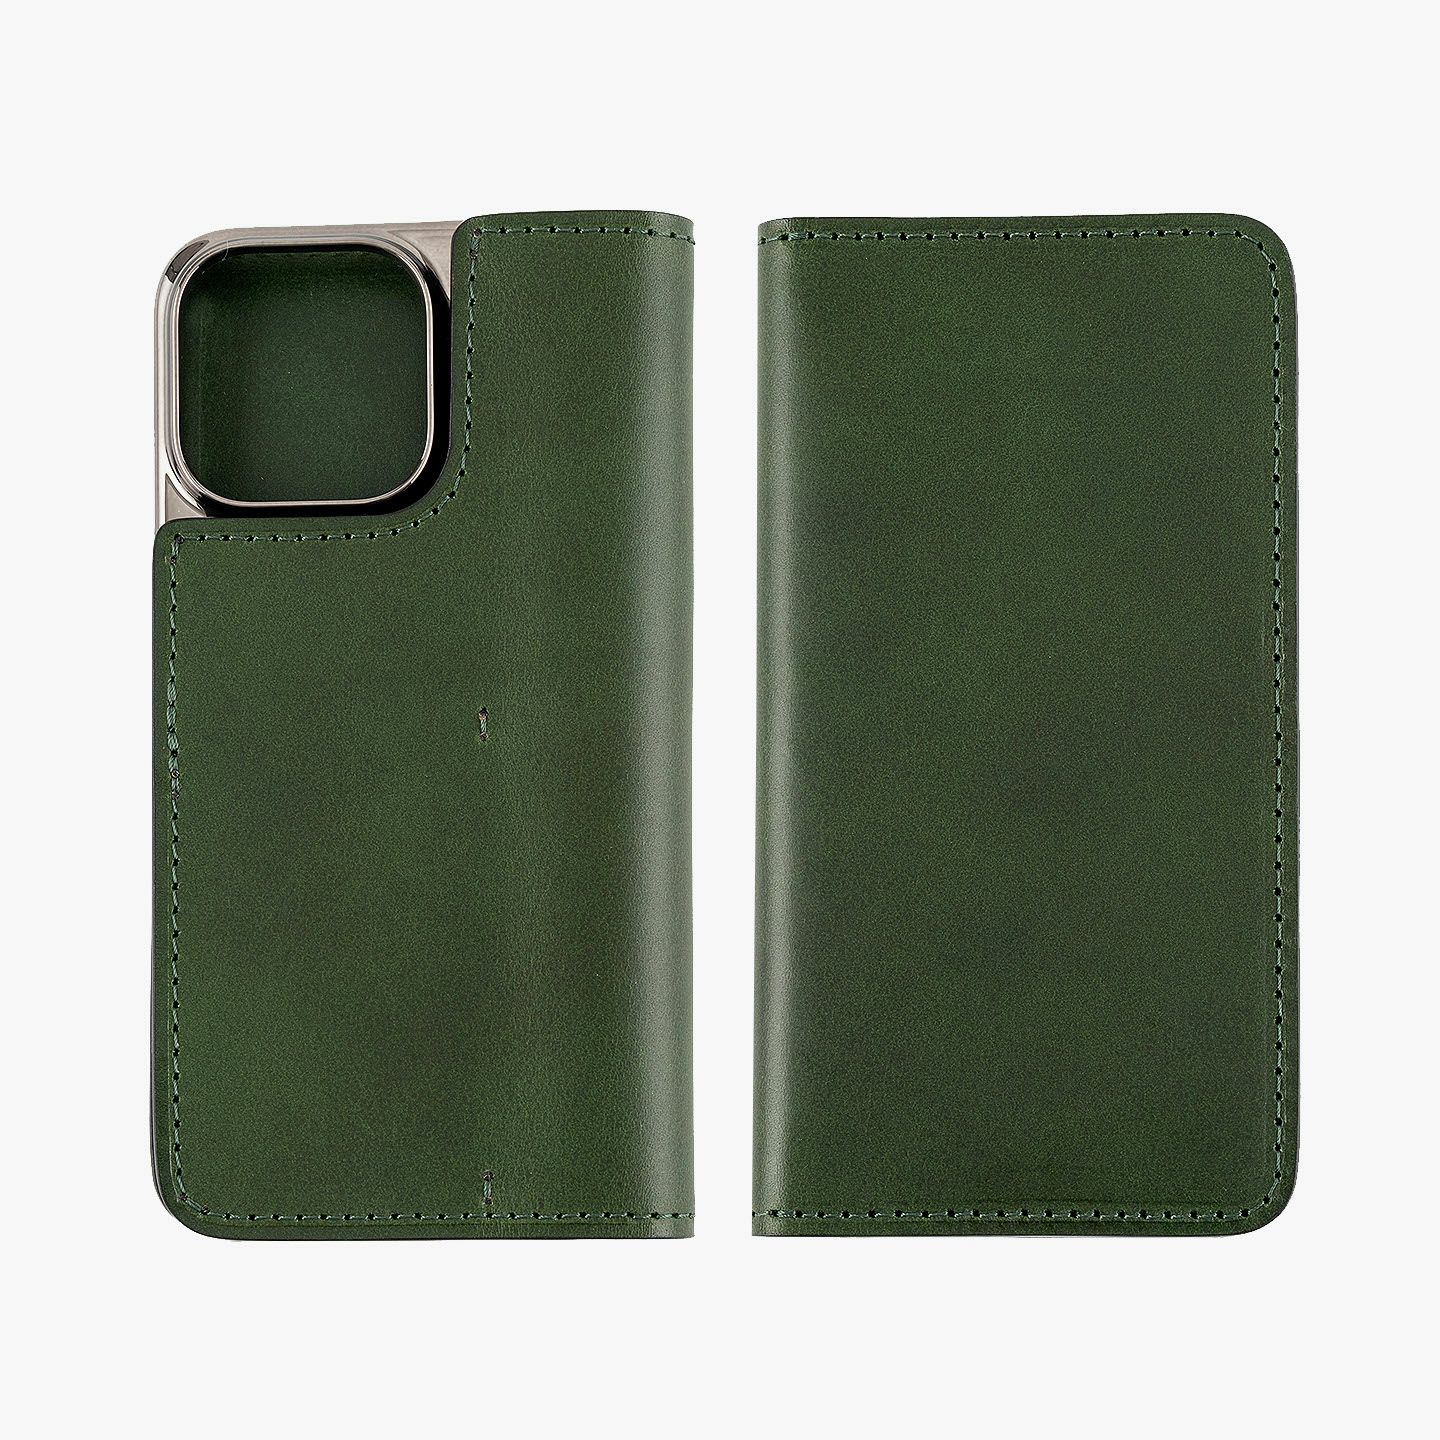 iPhone15 Pro Max、Color（ブッテーロ）：Green、内装ポケット装飾：無（外装・内装と同じ）、フラップ（マグネット式）：無